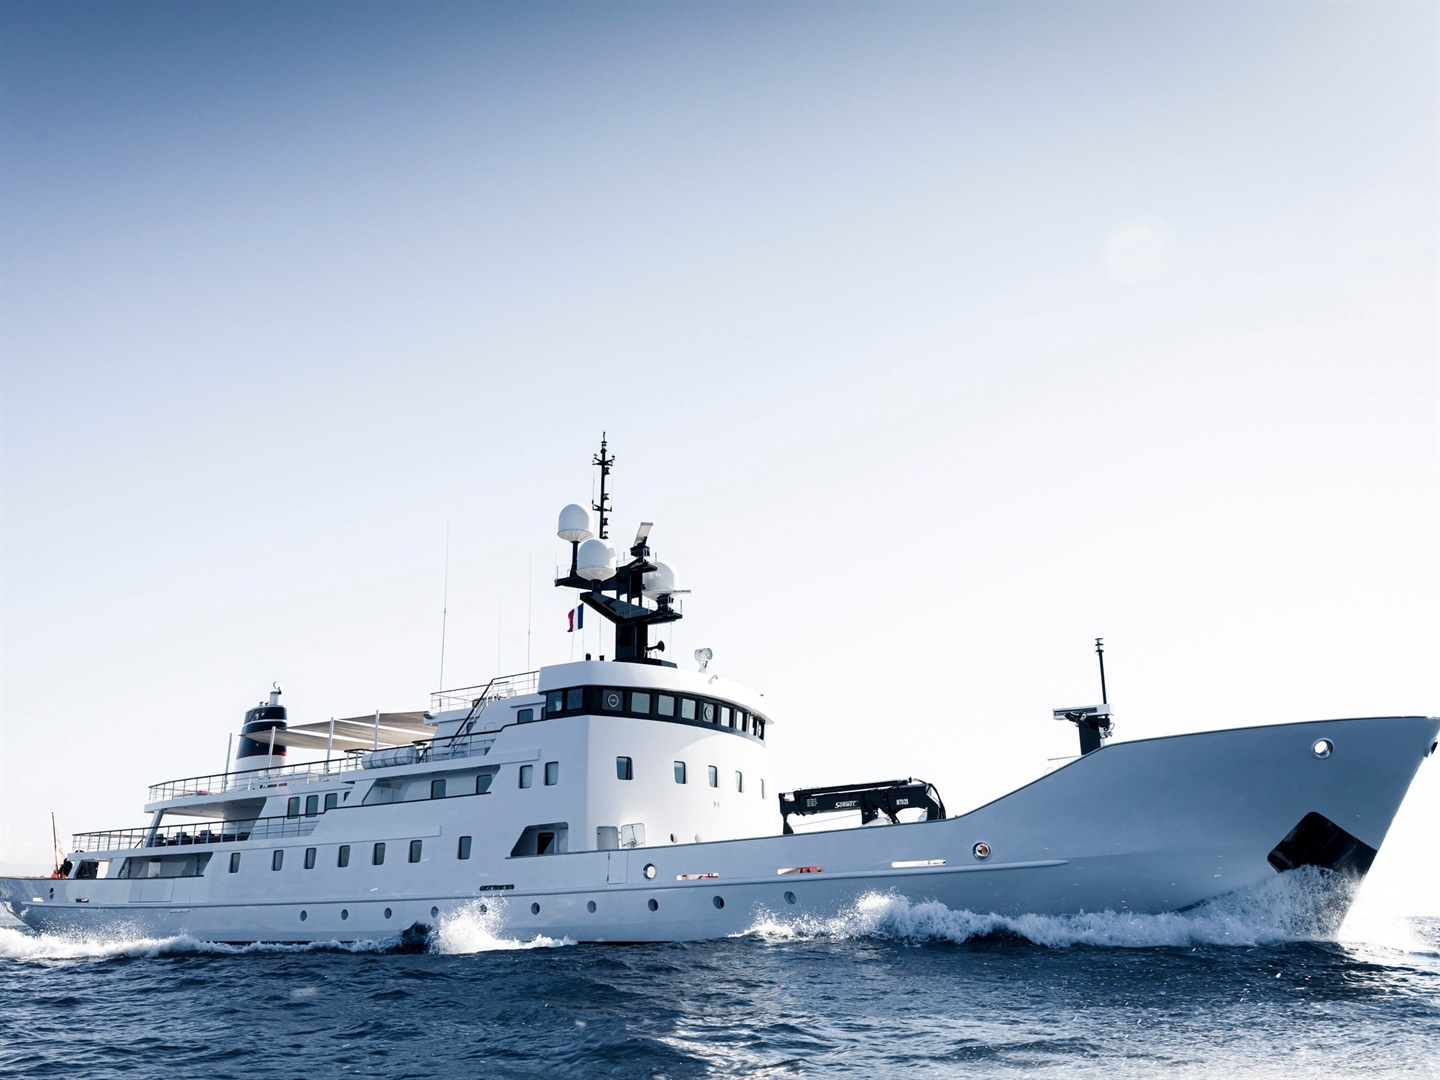 À l'intérieur d'Olivia, un ancien navire de la marine russe devenu un superyacht de luxe vendu pour 23 millions d'euros